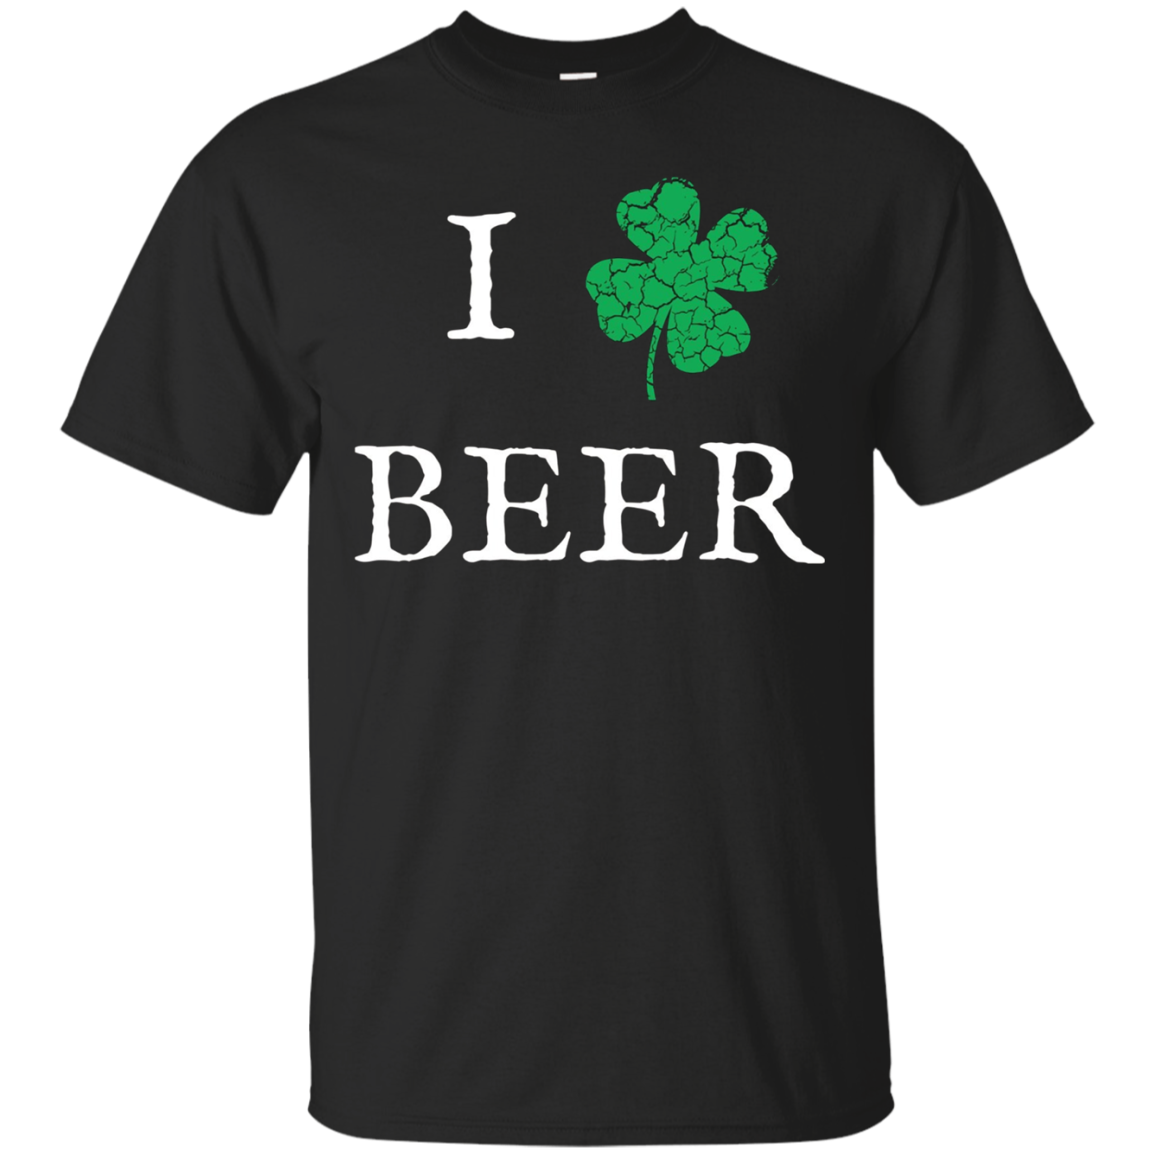 I Shamrock Beer - Irish Drinking T-shirt!